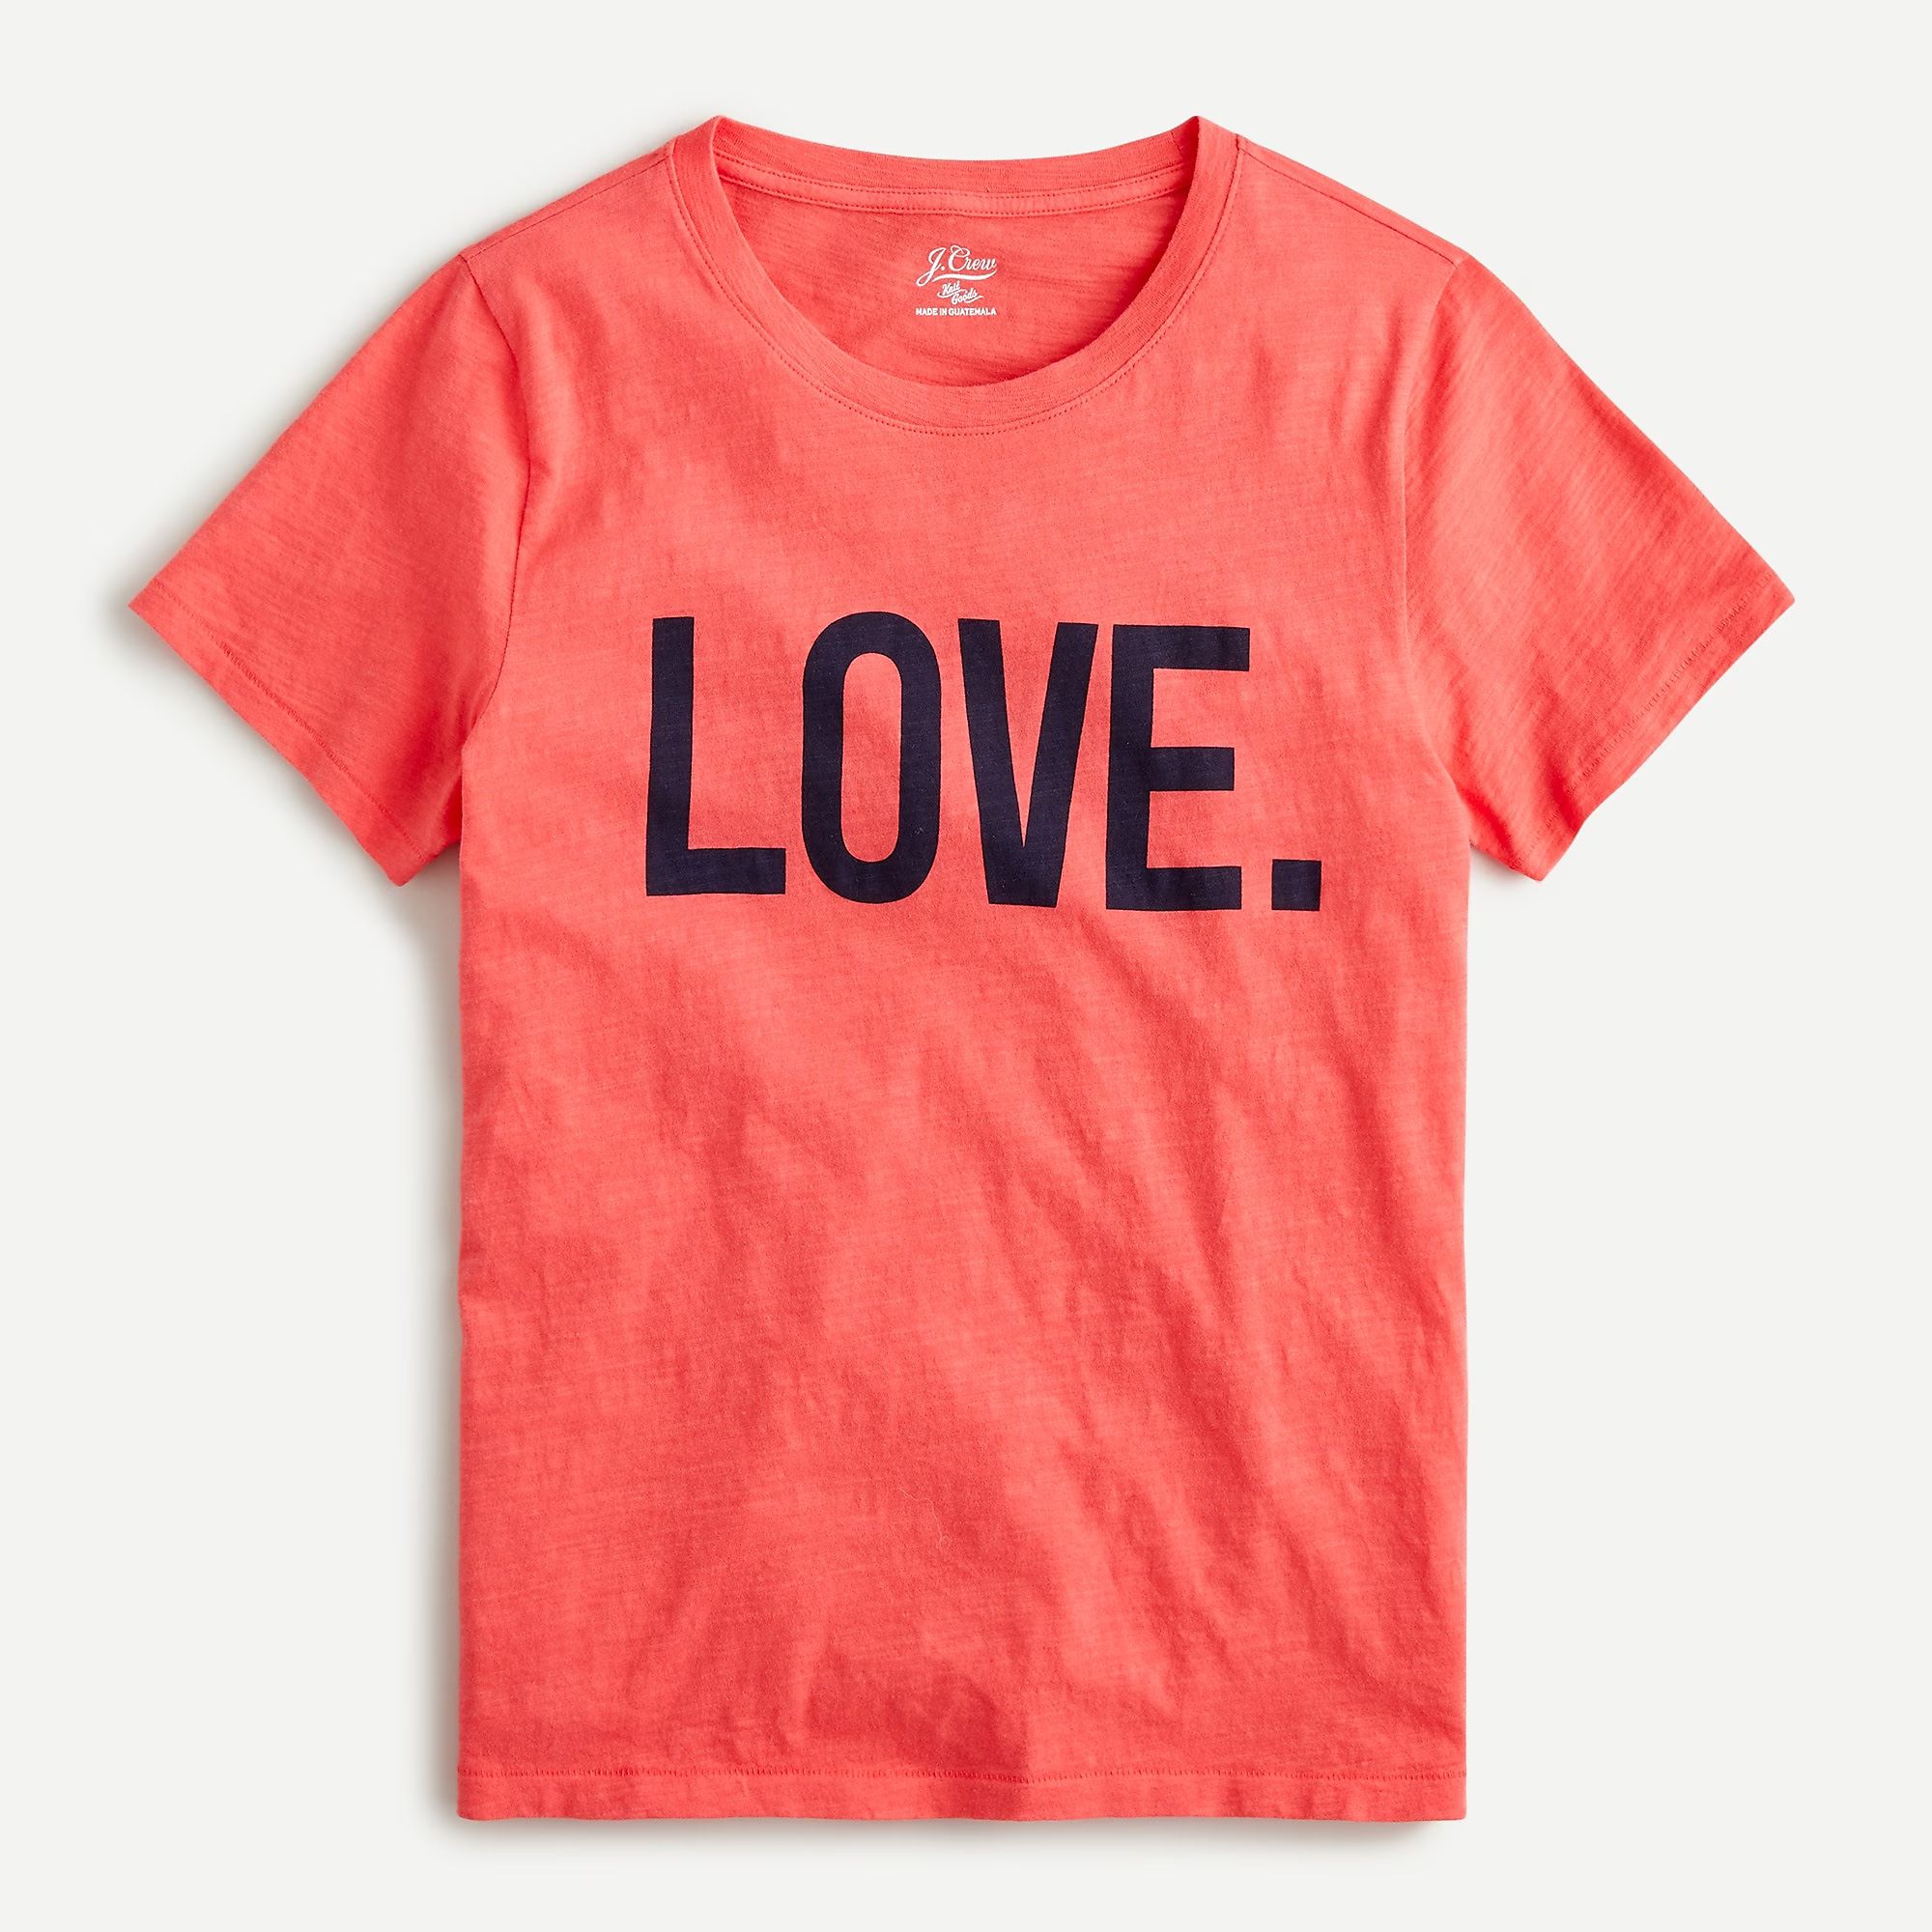 Vintage cotton crewneck "LOVE" T-shirt | J.Crew US